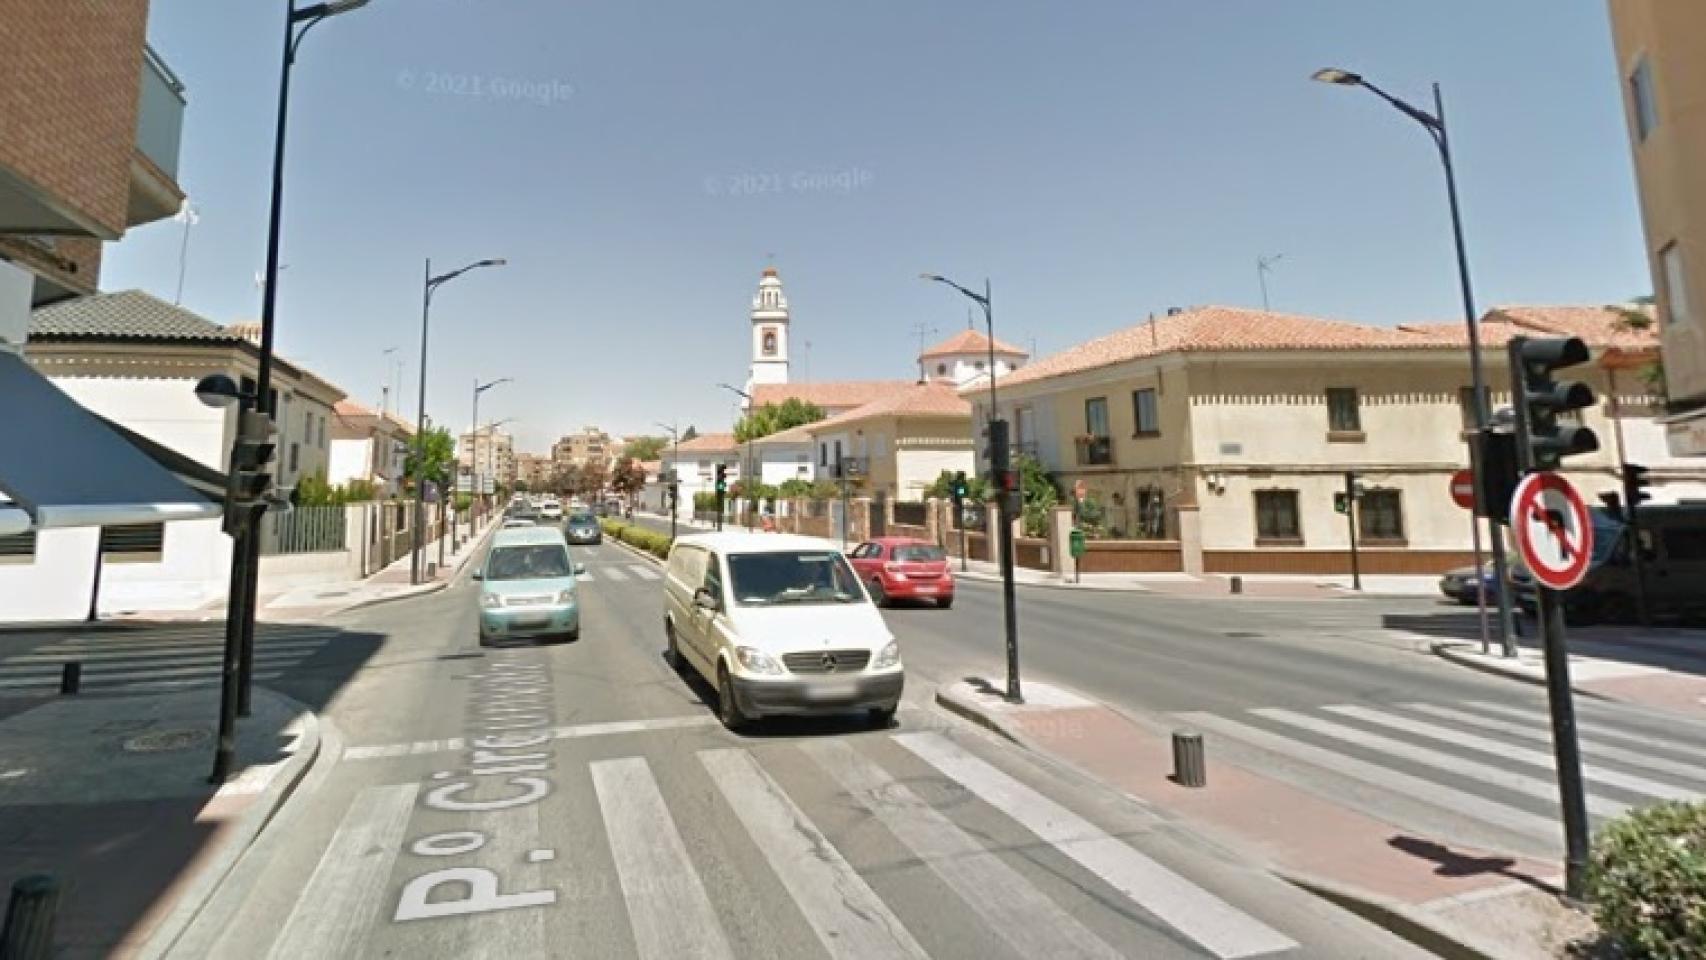 El cruce en el que tuvo lugar el accidente de tráfico. Foto: Google Maps.